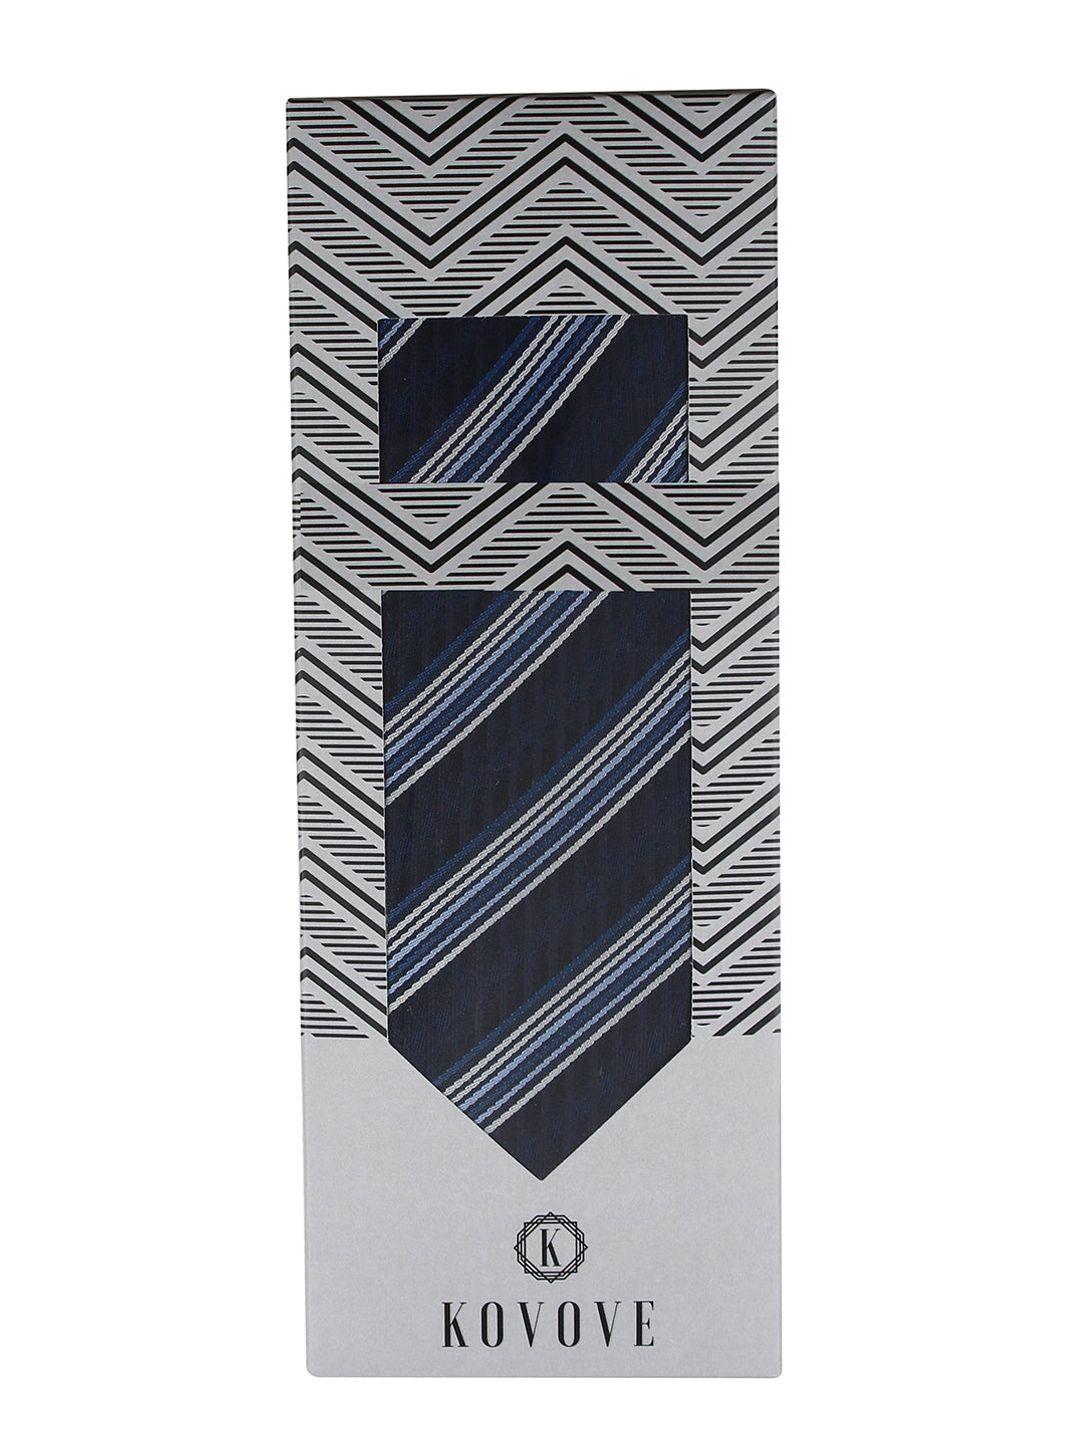 kovove black striped tie & pocket square gift set